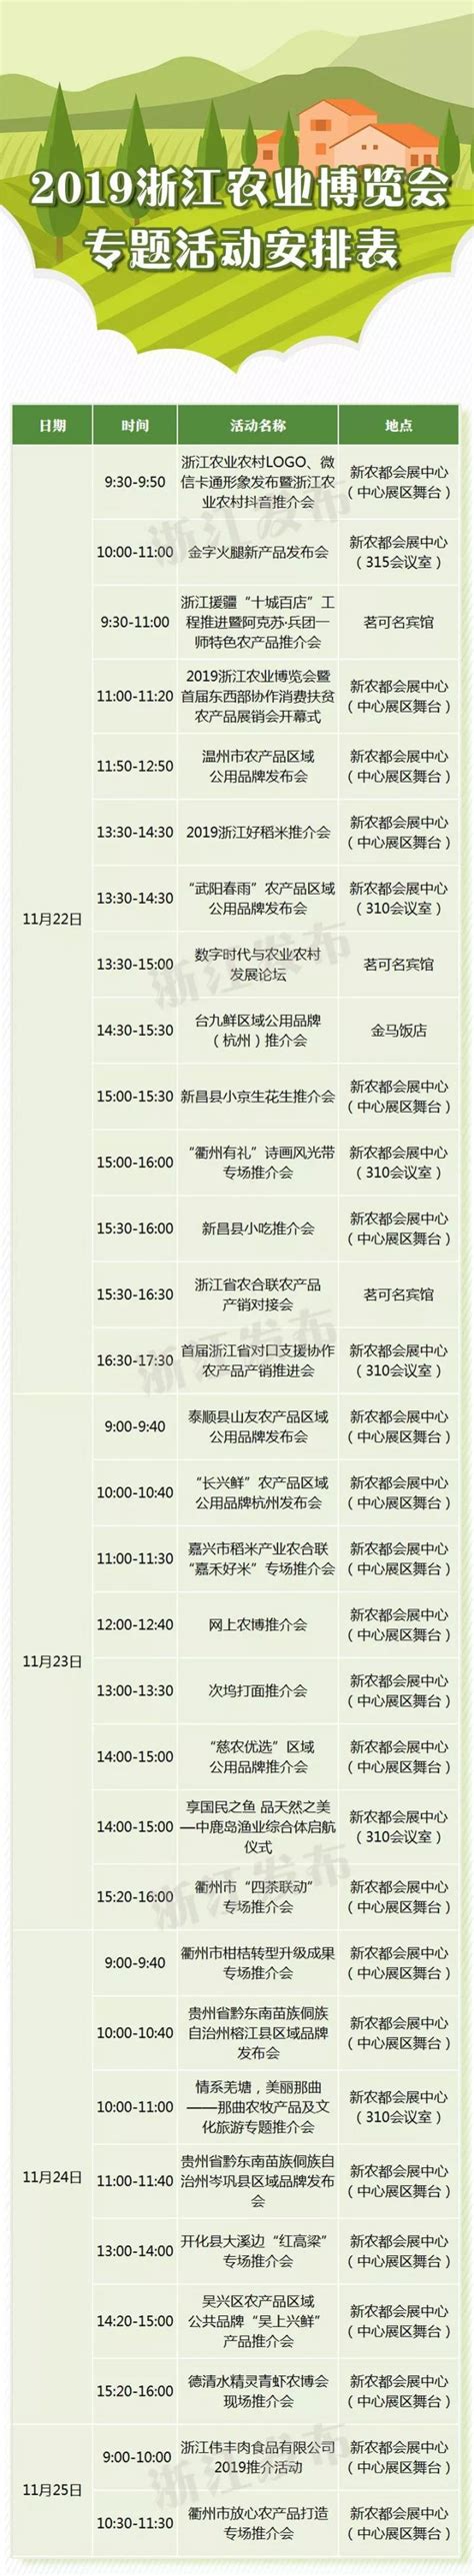 2019浙江农业博览会活动时间表（持续更新…）- 杭州本地宝